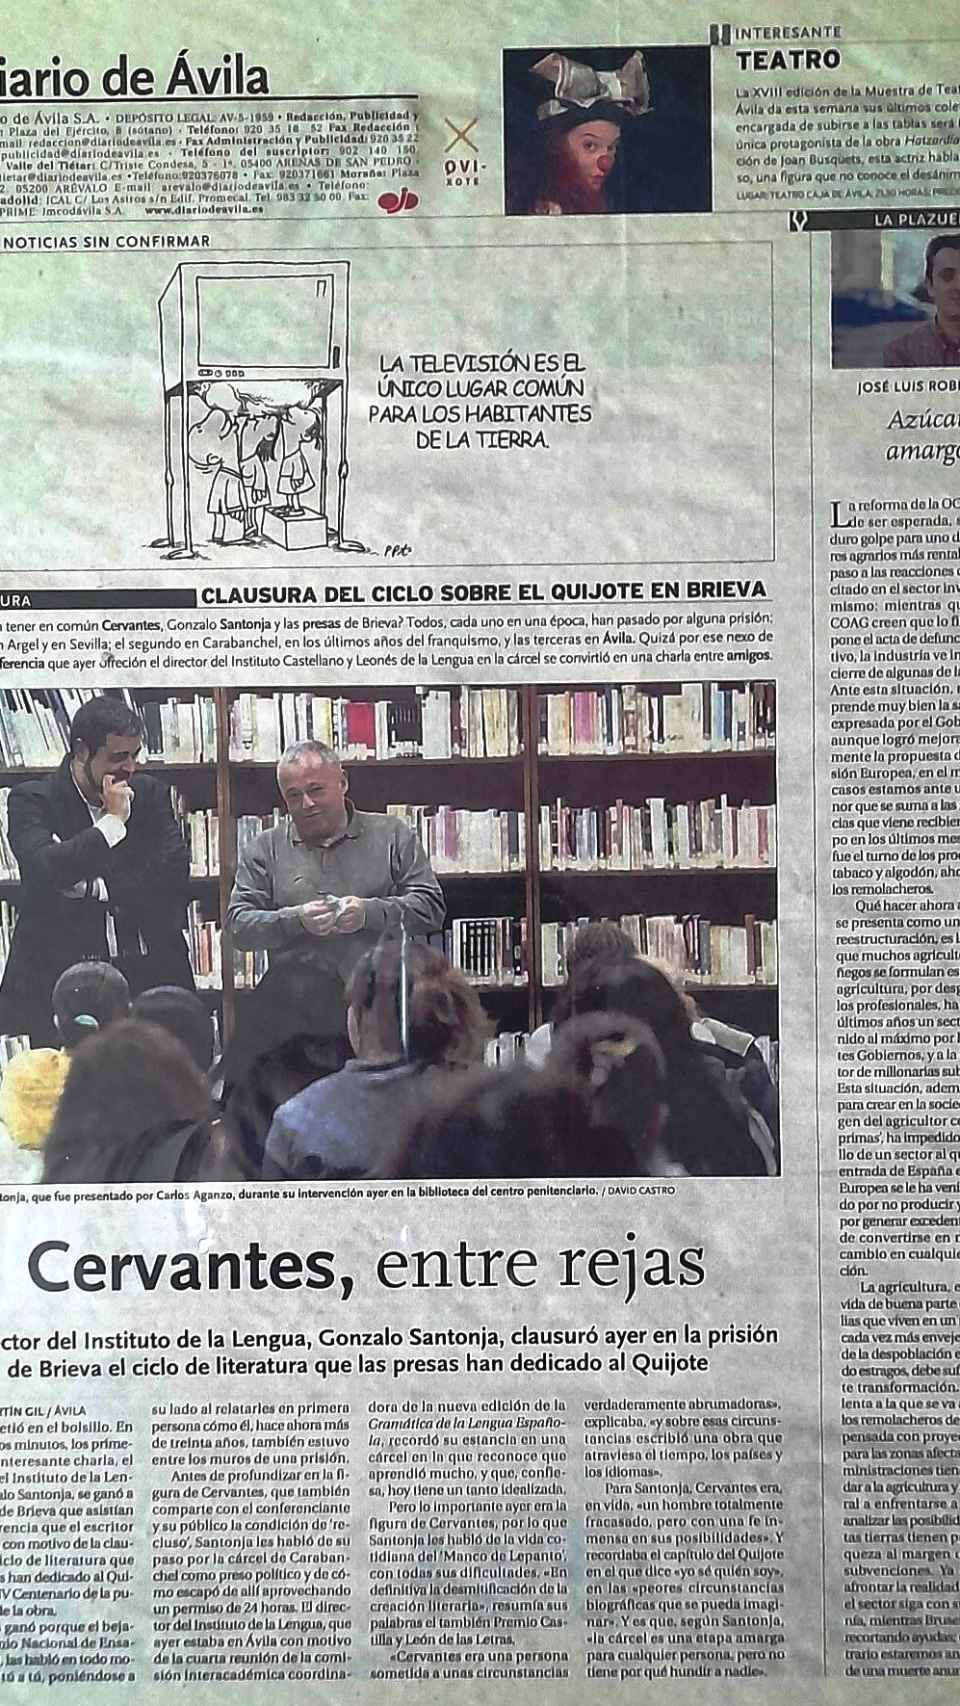 Contraportada del Diario de Ávila, donde se da cuenta de la visita